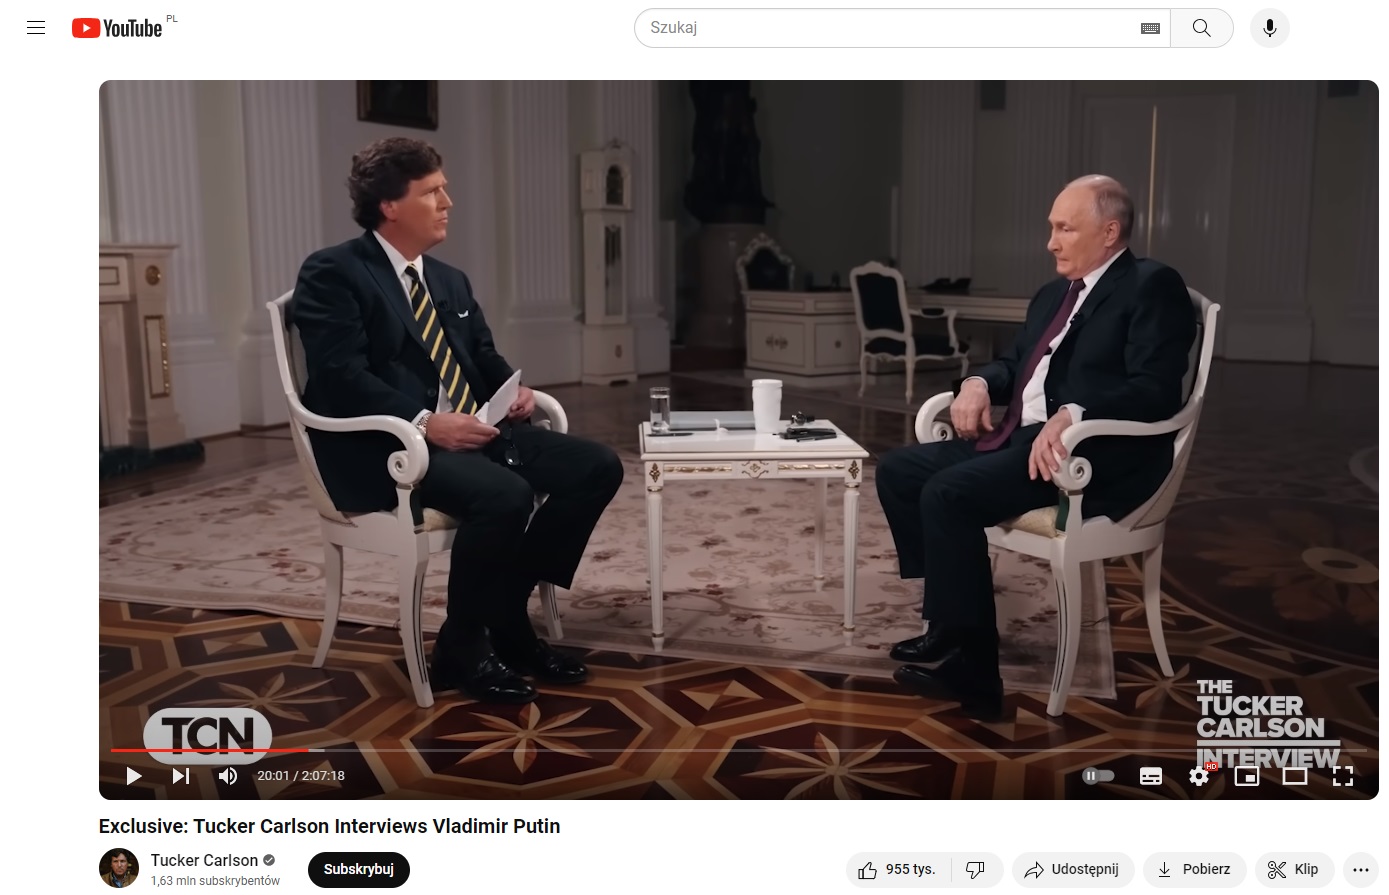 Wywiad Tucker Carlson - Putin to w rzeczywistości monolog prezydenta Federacji Rosyjskiej pełen historycznych przekłamań